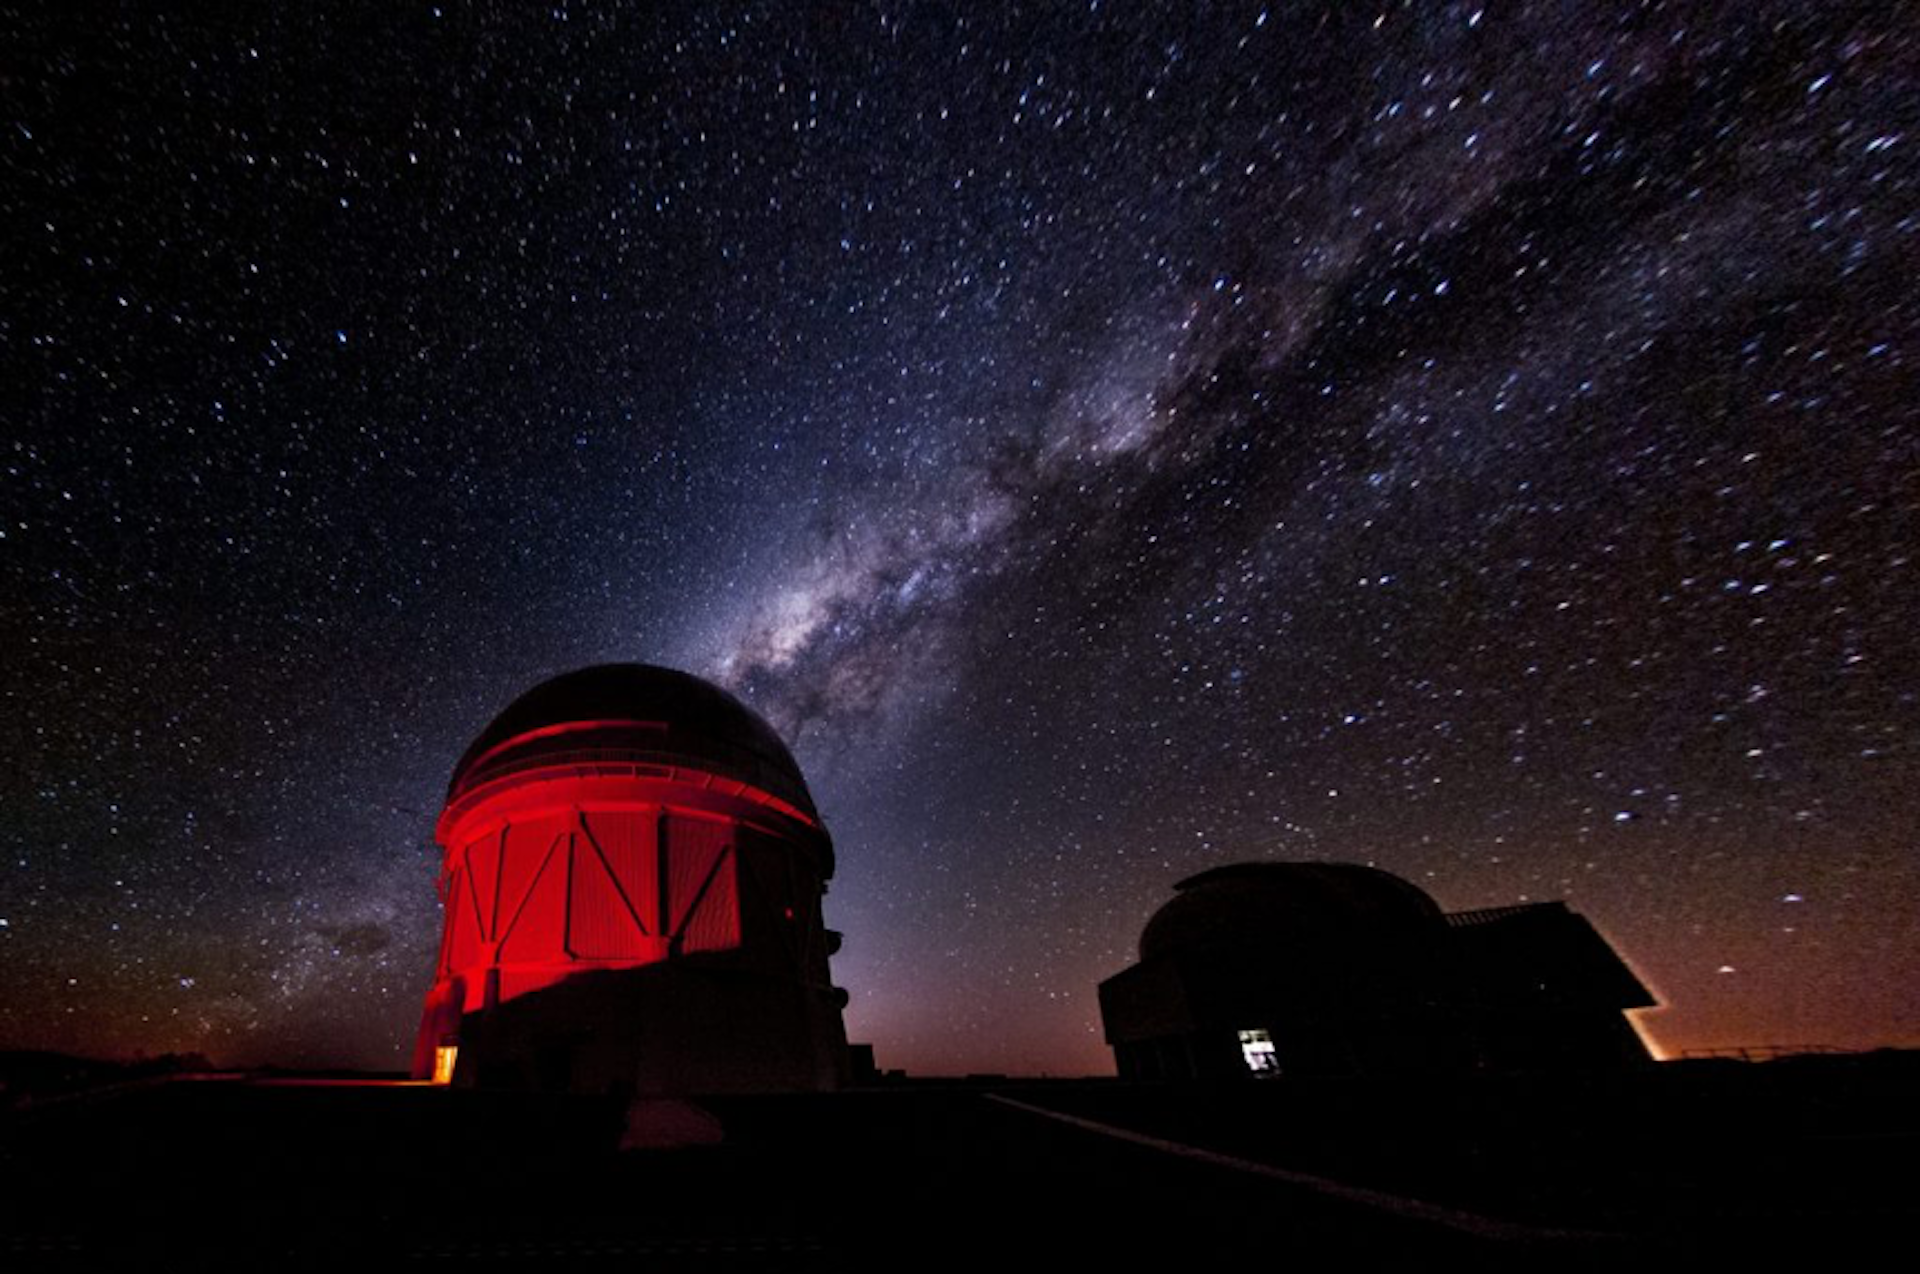 Fotografija rdeče osvetljene zgradbe observatorija z zvezdnatim nebom v ozadju.